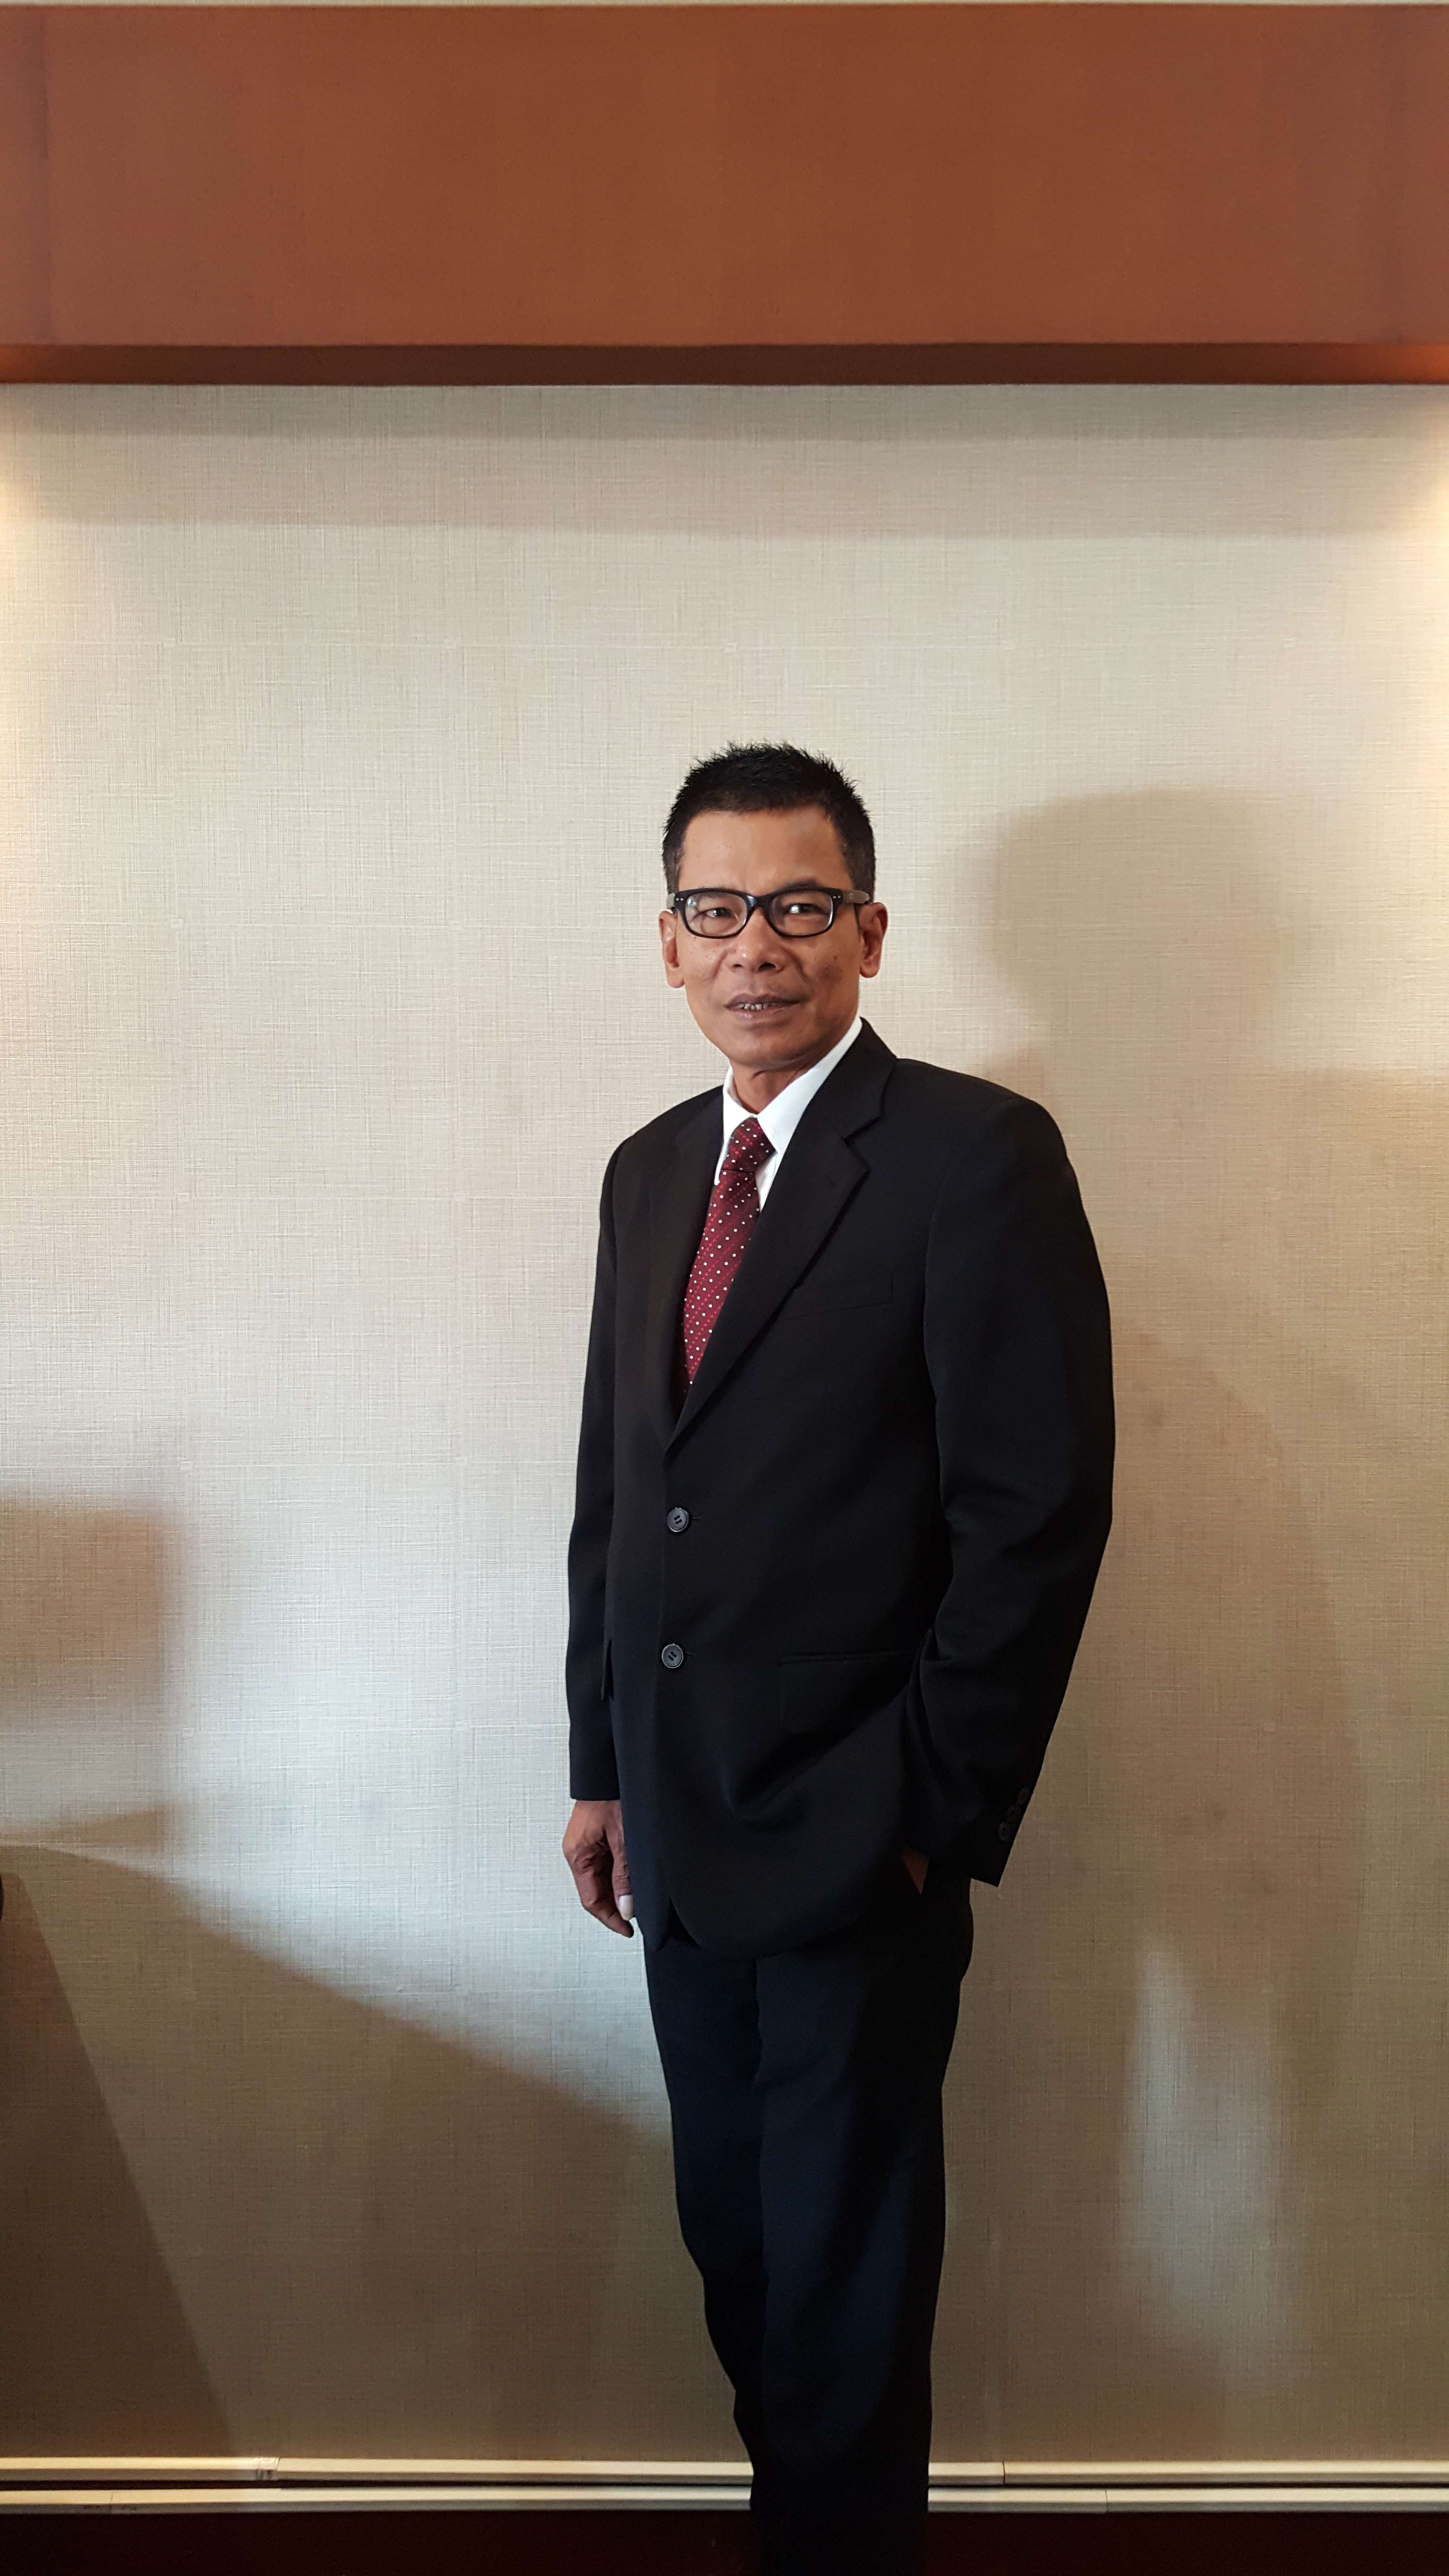 Bambang Sujatmiko, president and CEO, Aerofood